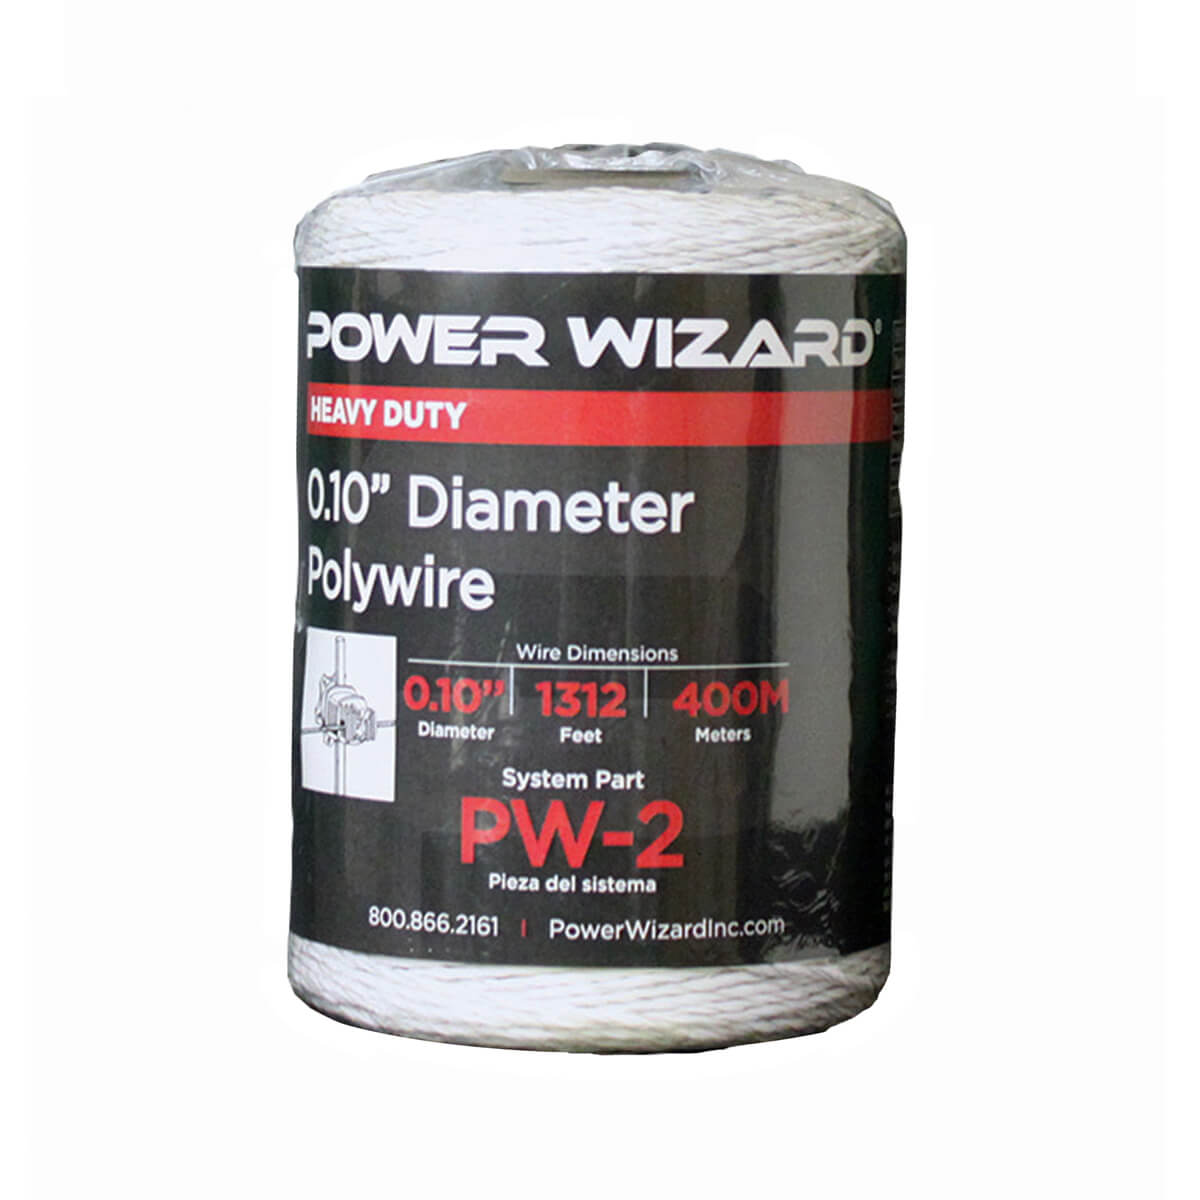 Power Wizard PW-2 Polywire